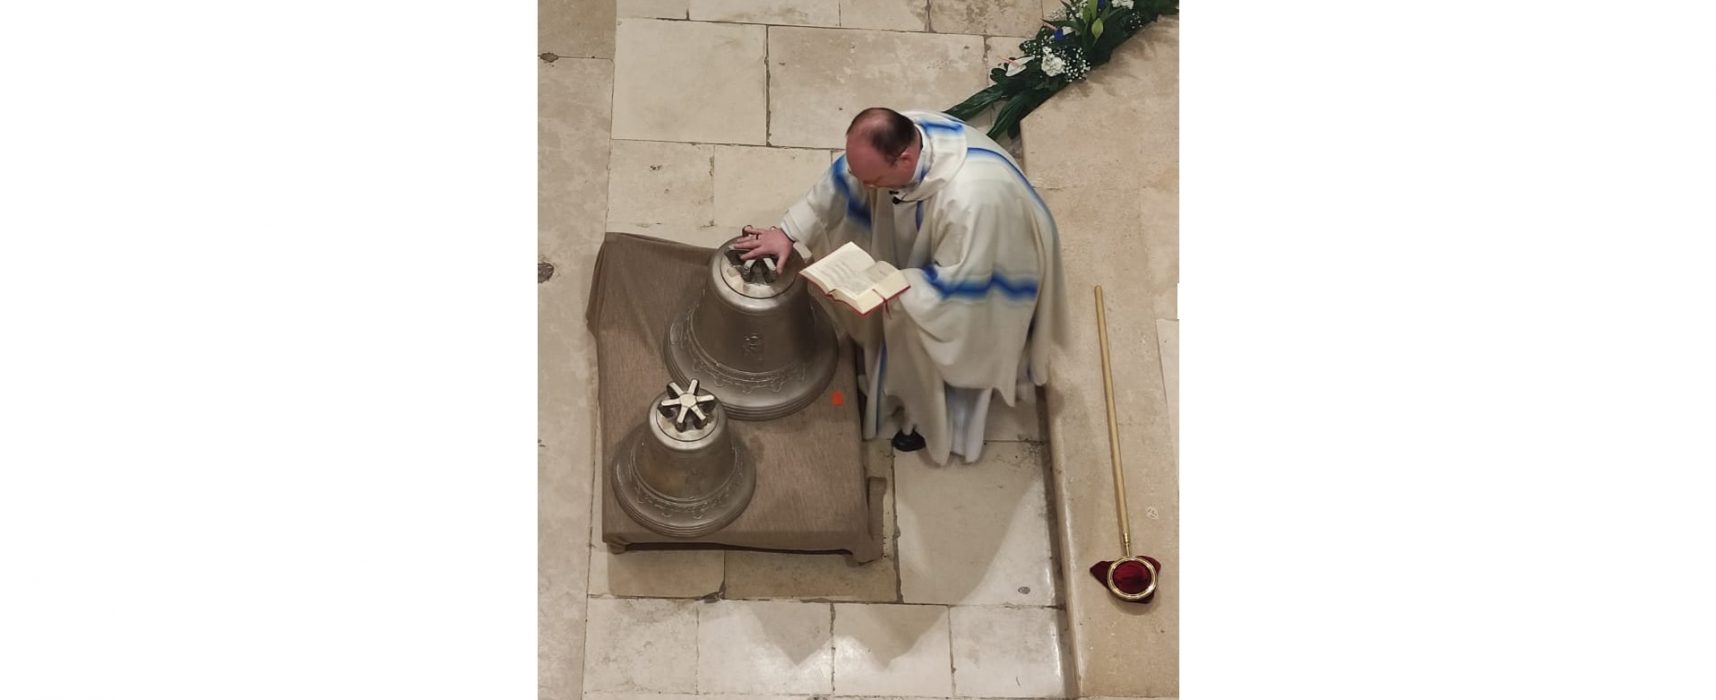 Suoneranno la Notte di Natale le nuove campane della parrocchia di san Lorenzo / FOTO